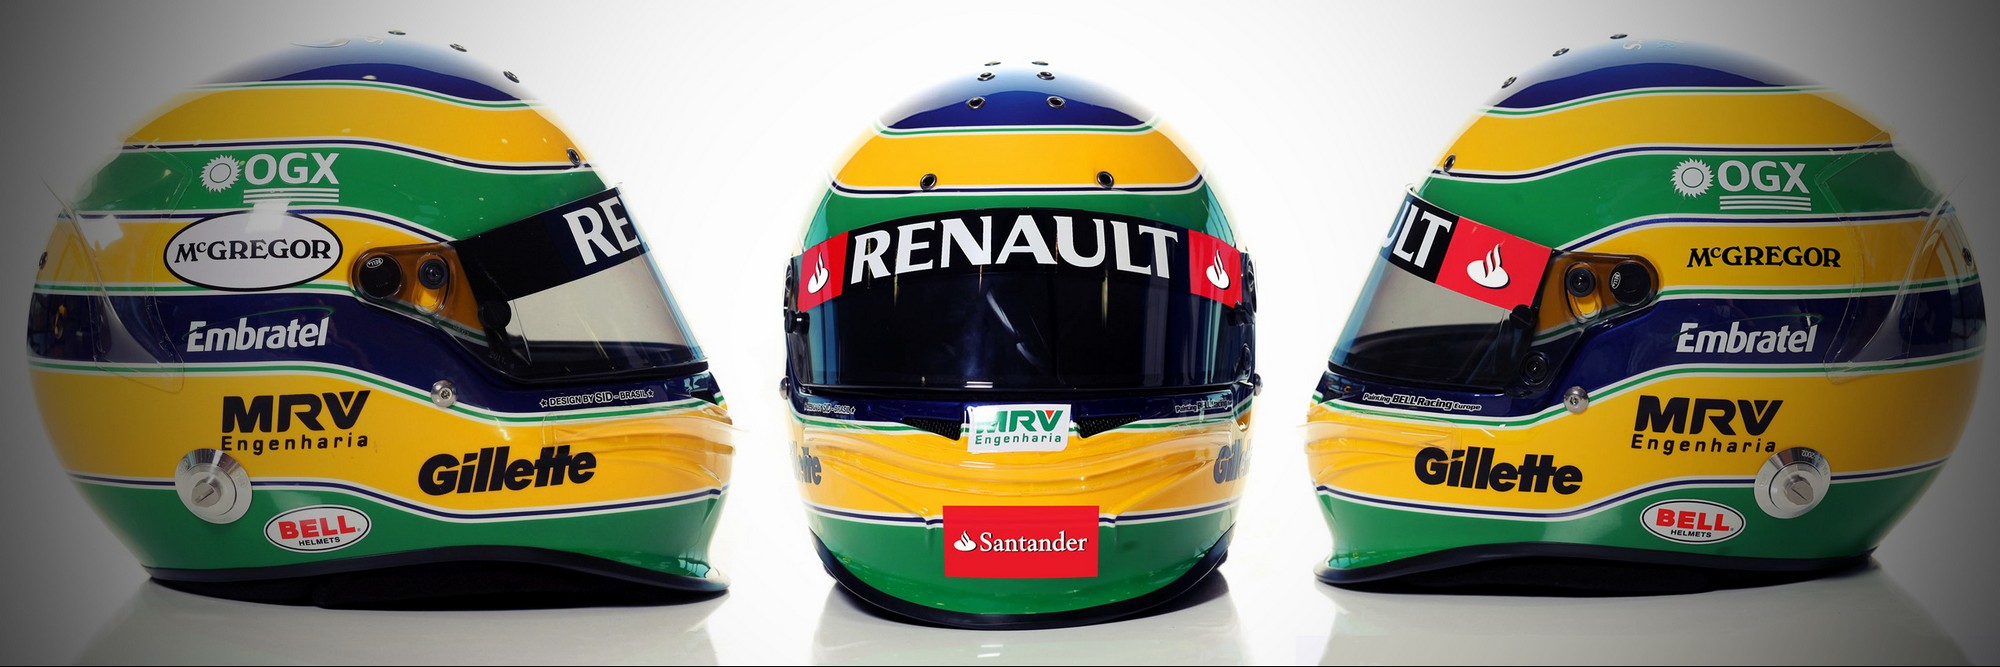 Шлем Бруно Сенны на сезон 2012 года | 2012 helmet of Bruno Senna